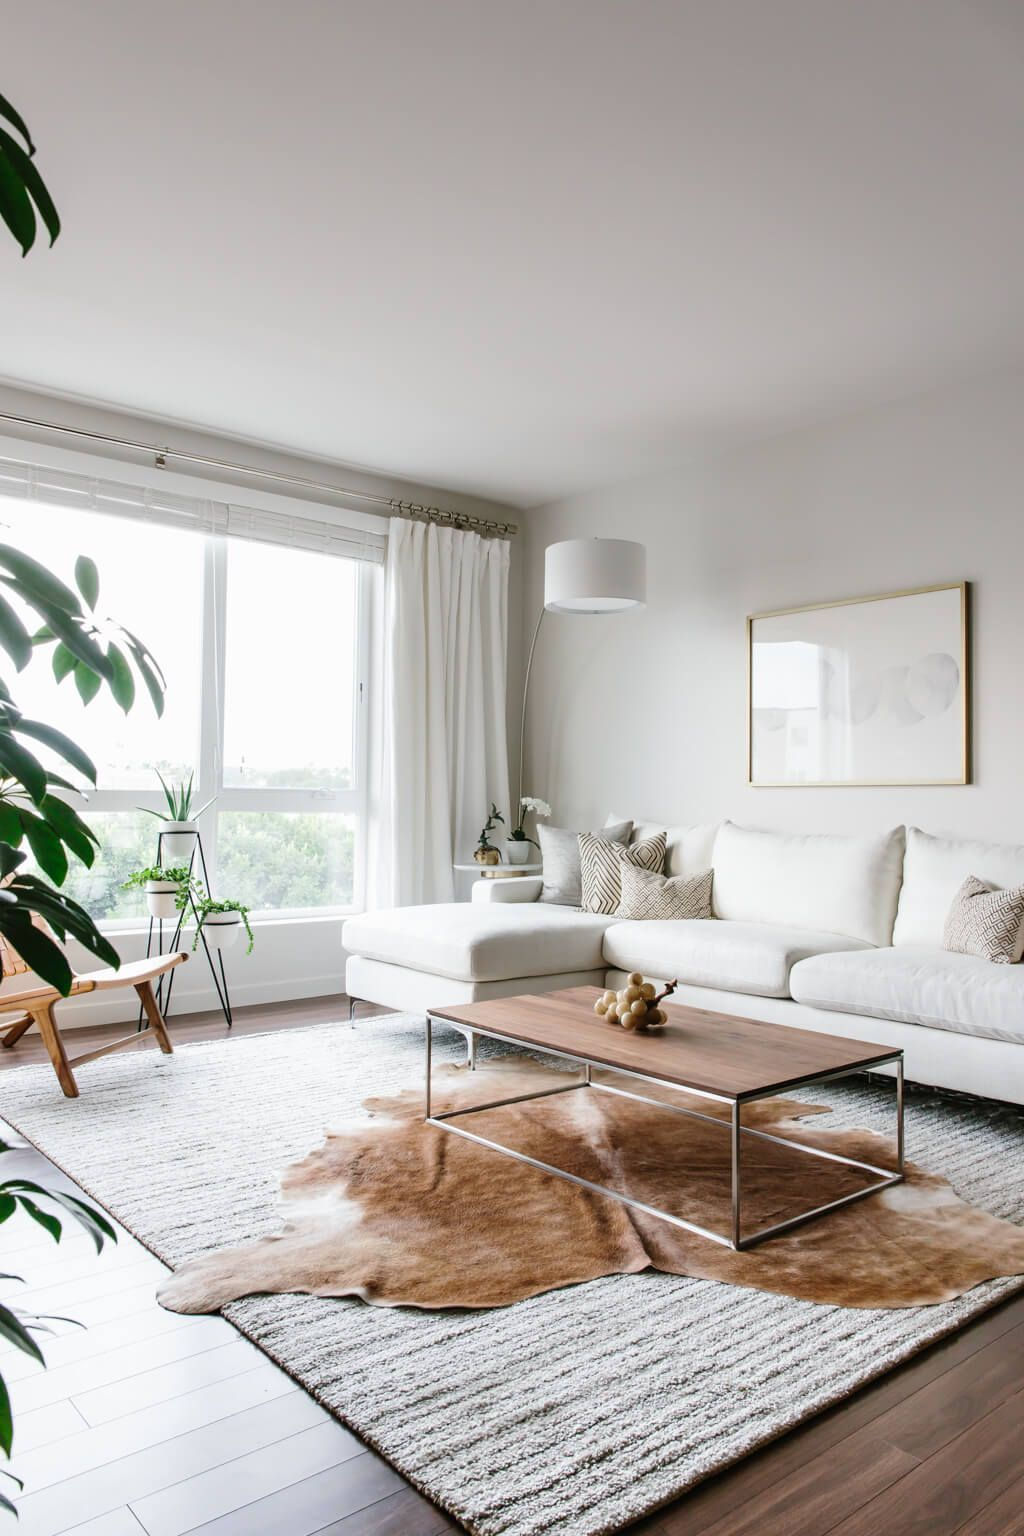 Nội thất nhỏ gọn, tinh tế theo phong cách tối giản phù hợp với không gian phòng khách hẹp.